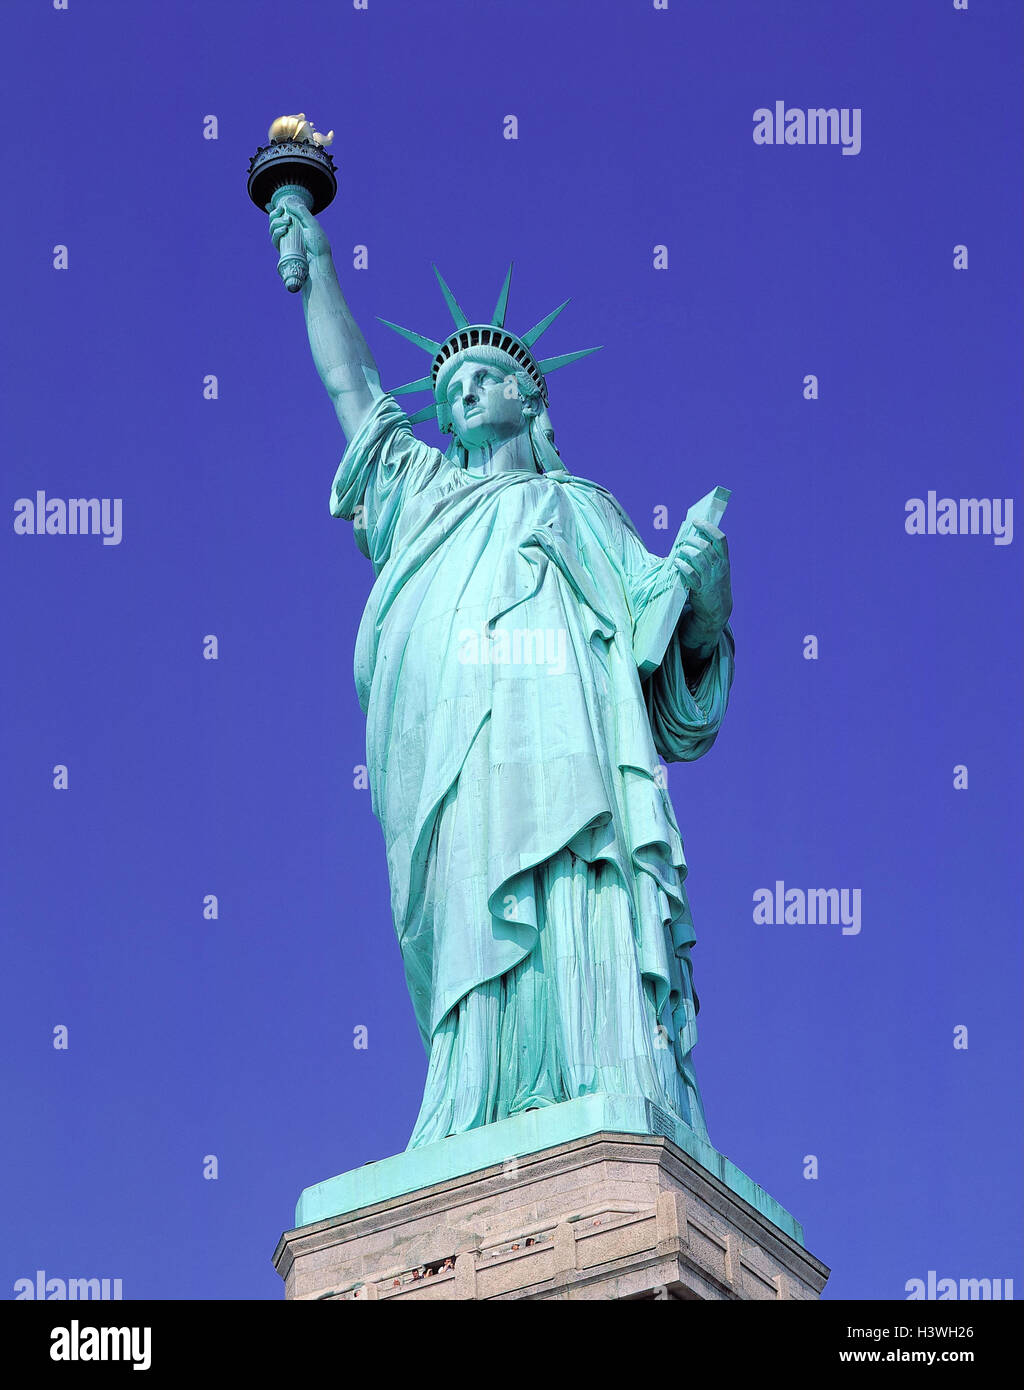 Die USA, New York City, die Freiheitsstatue, Amerika, Weltstadt, Liberty Island, Freiheitsstatue, Statue, Höhe 46 m, UNESCO-Weltkulturerbe, Sehenswürdigkeit, Kultur, Sehenswürdigkeit, touristische Attraktion Stockfoto